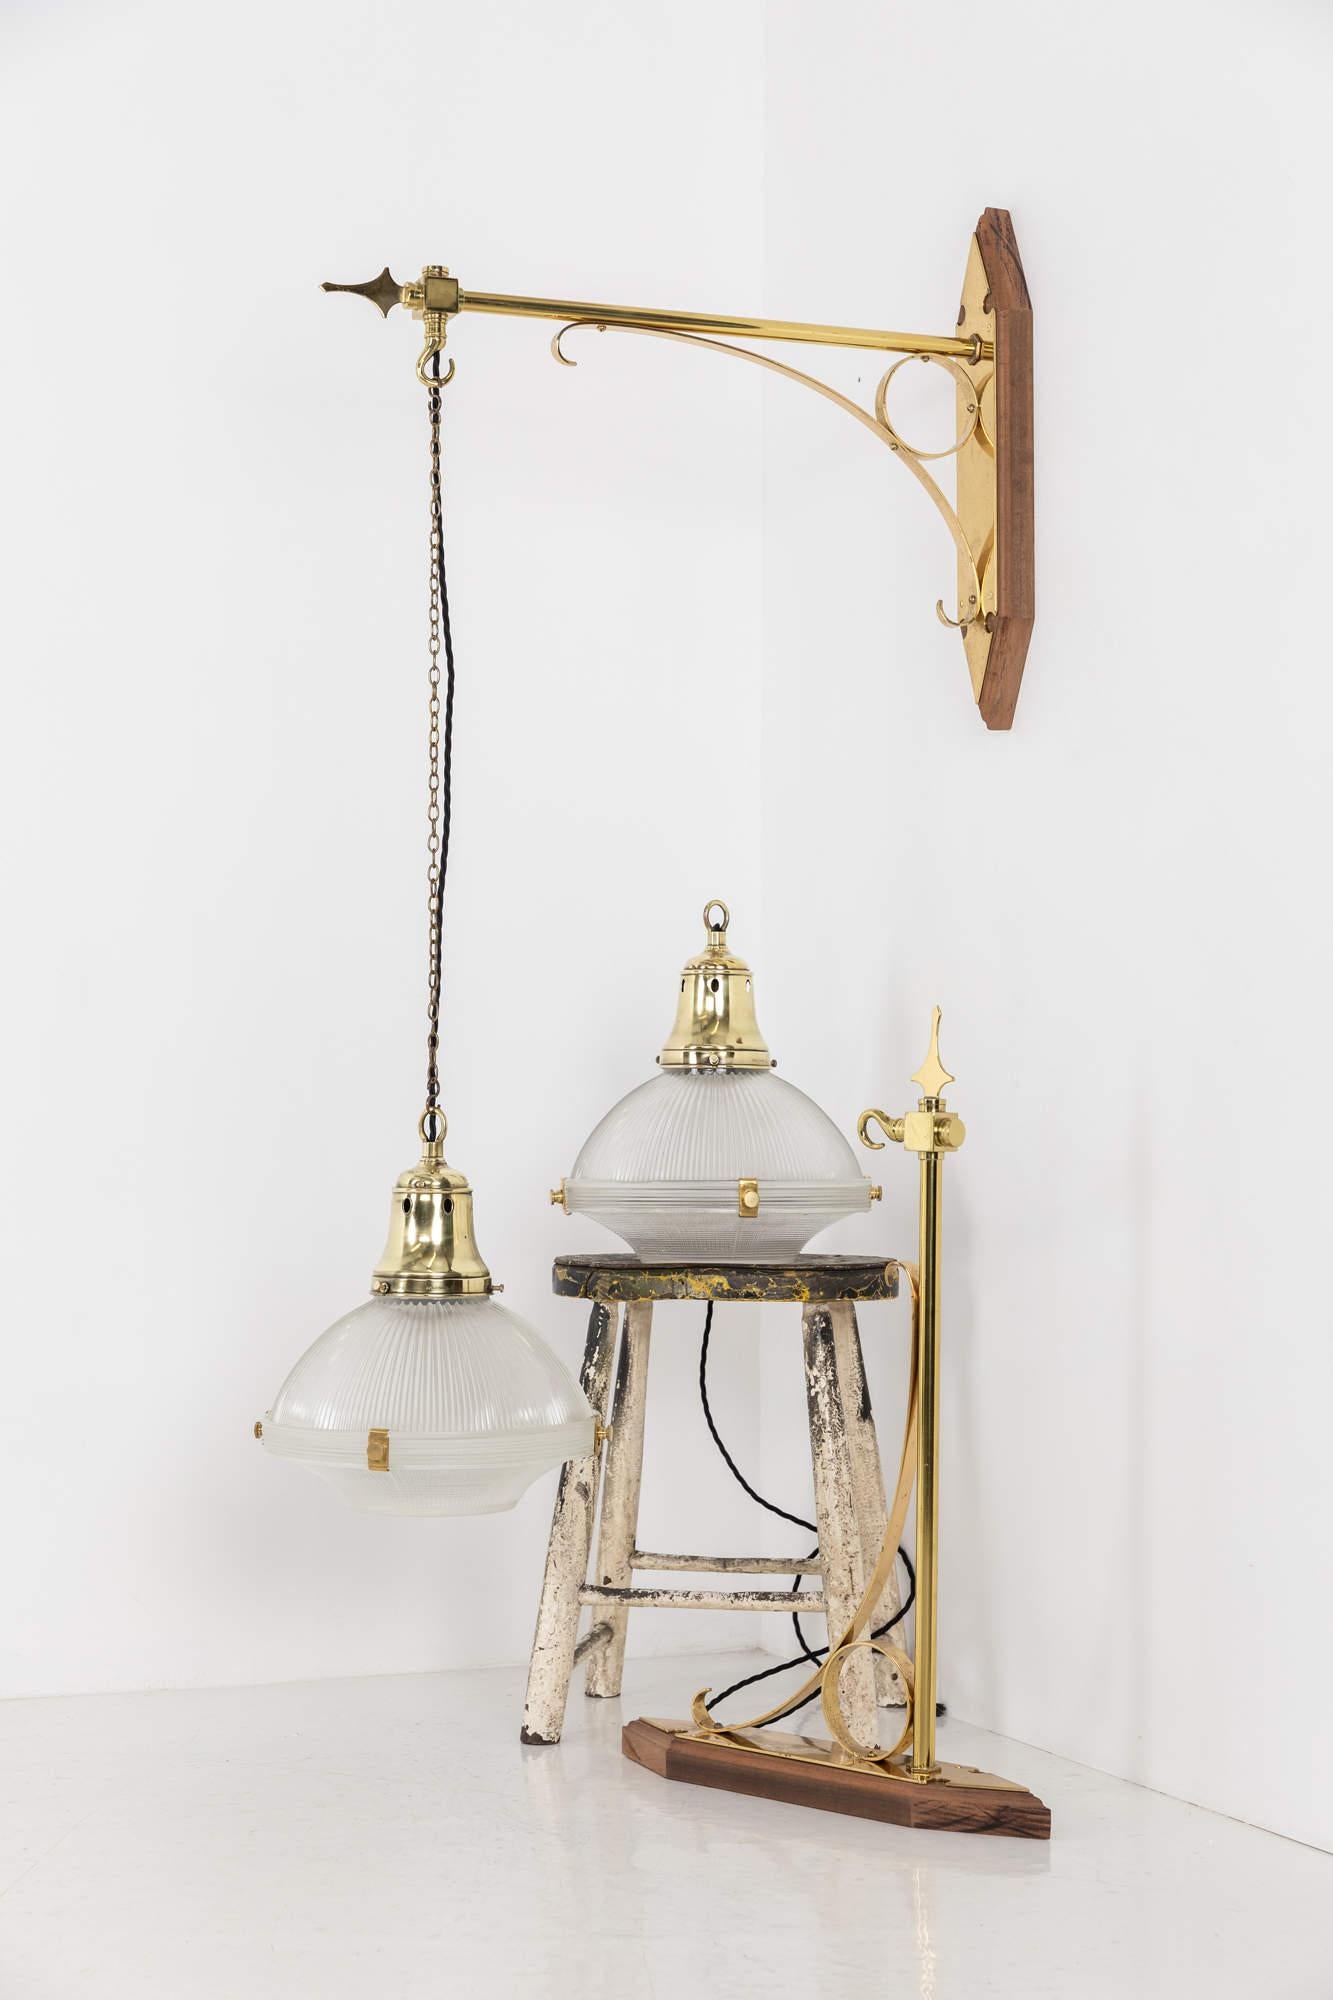 

Ein sehr seltenes Paar Wandlampen mit Holophane-Glasschirmen. Um 1920

Sehr wahrscheinlich einst in einer Kirche verwendet - Wandhalterungen aus Messing mit Mahagoni-Rückplatten und 12-Zoll-Prismenglas Holophane 'Reflector-Refraktor' Schirme. Die